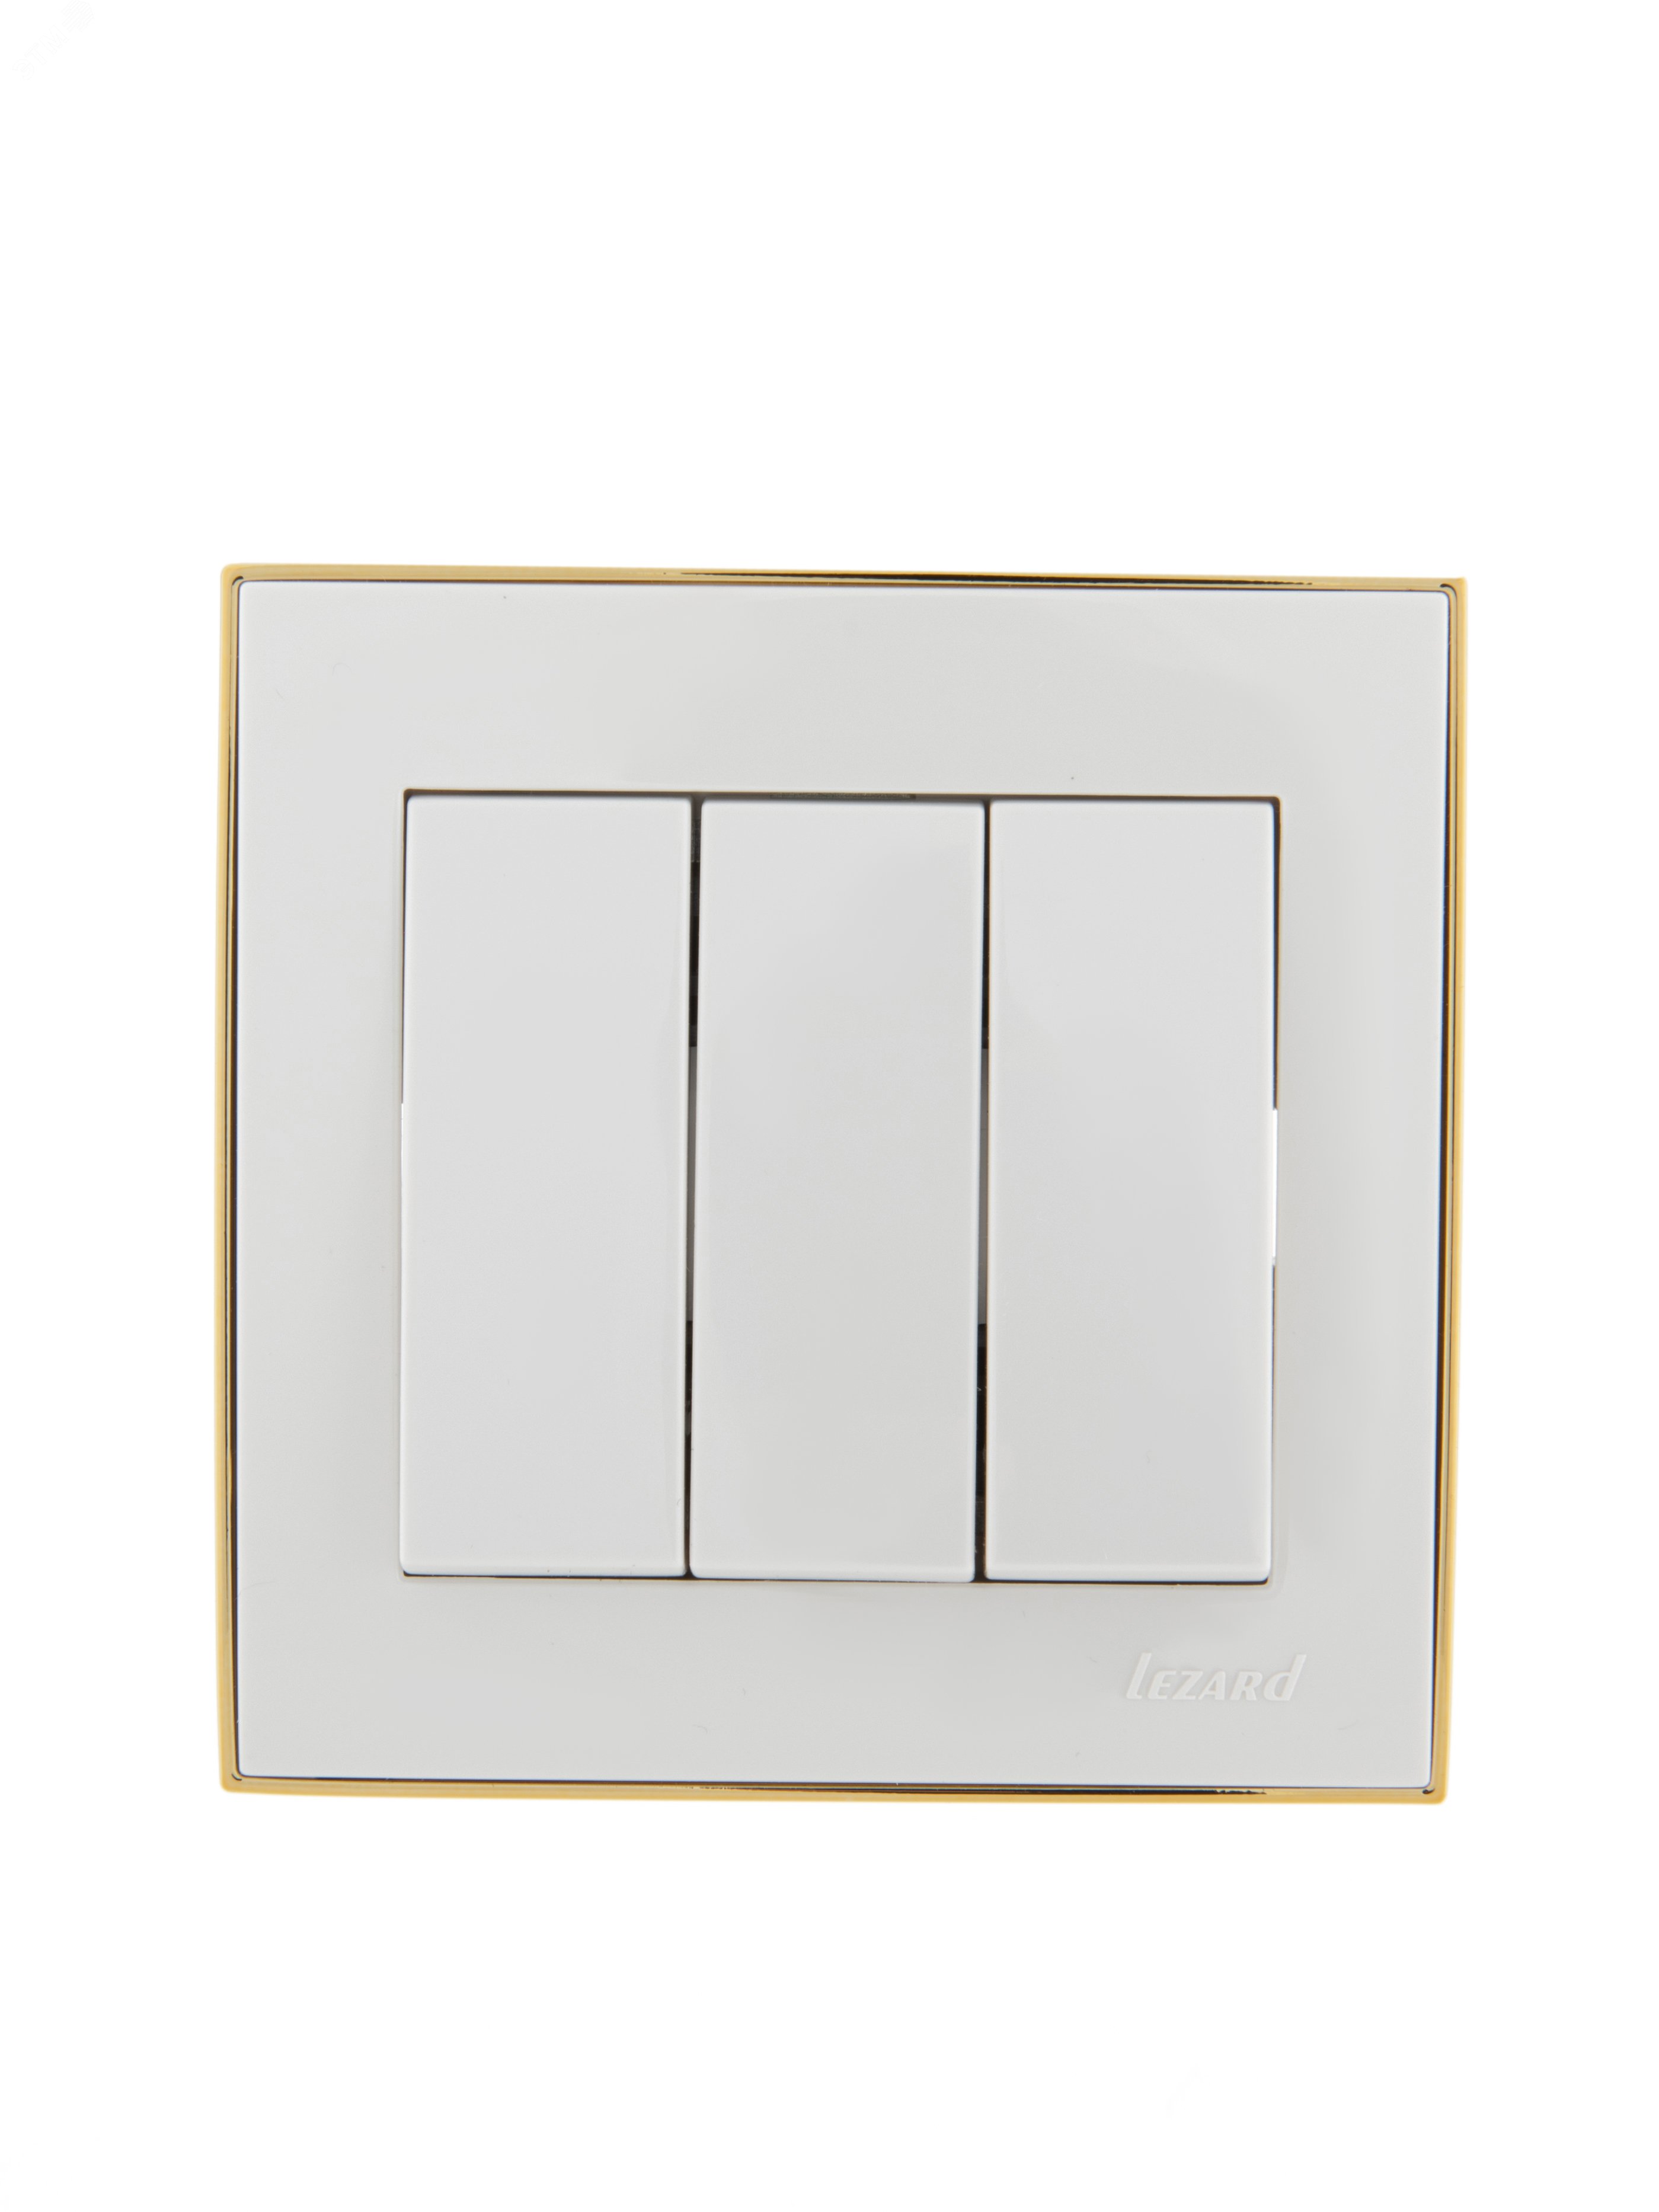 Выключатель RAIN тройной белый с боковой вставкой золото 703-0226-109 Lezard